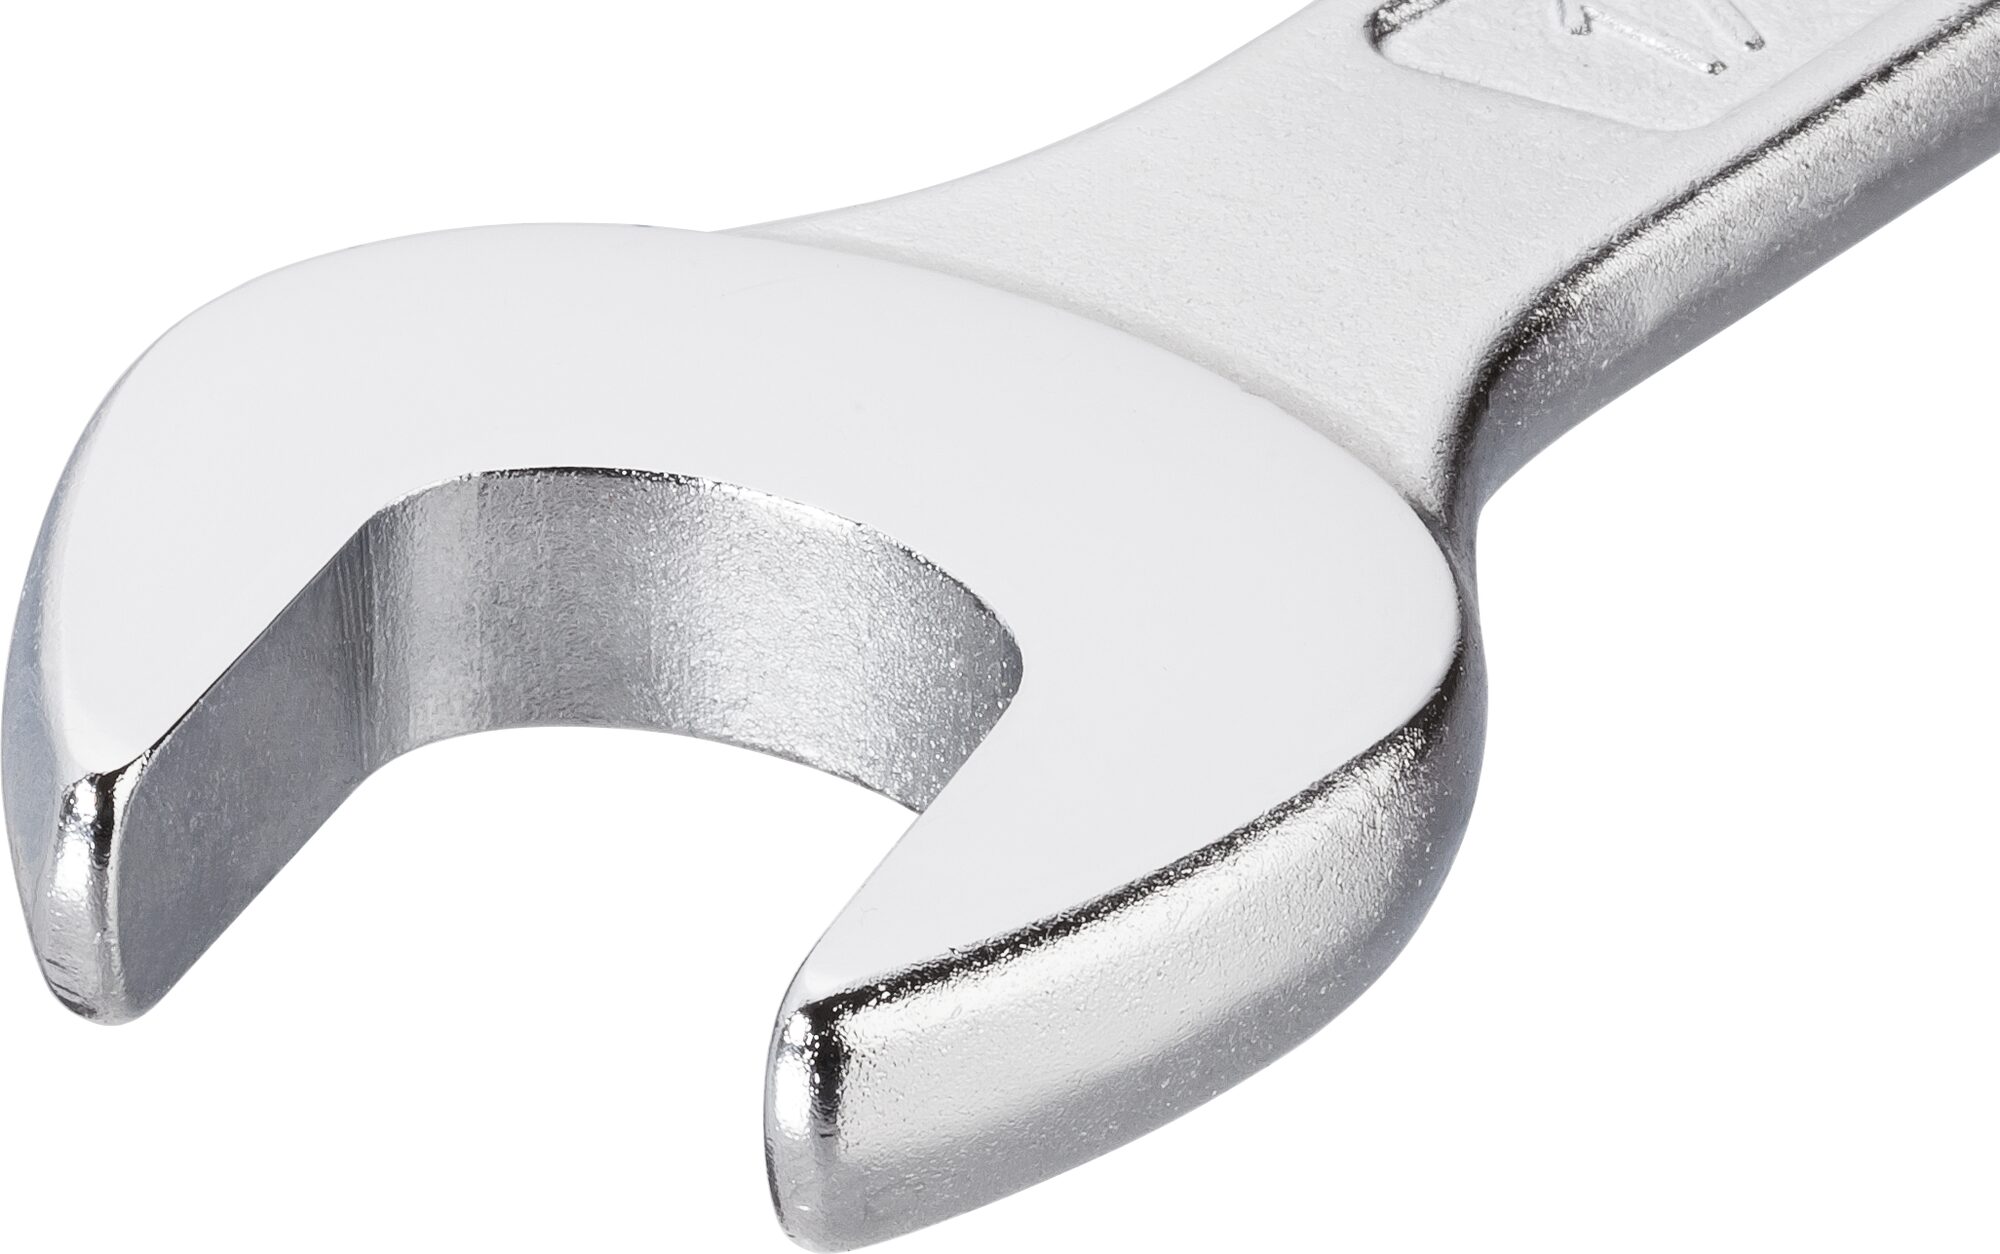 HAZET Ring-Maulschlüssel 600N-18 · Außen Doppel-Sechskant-Tractionsprofil · 18 mm